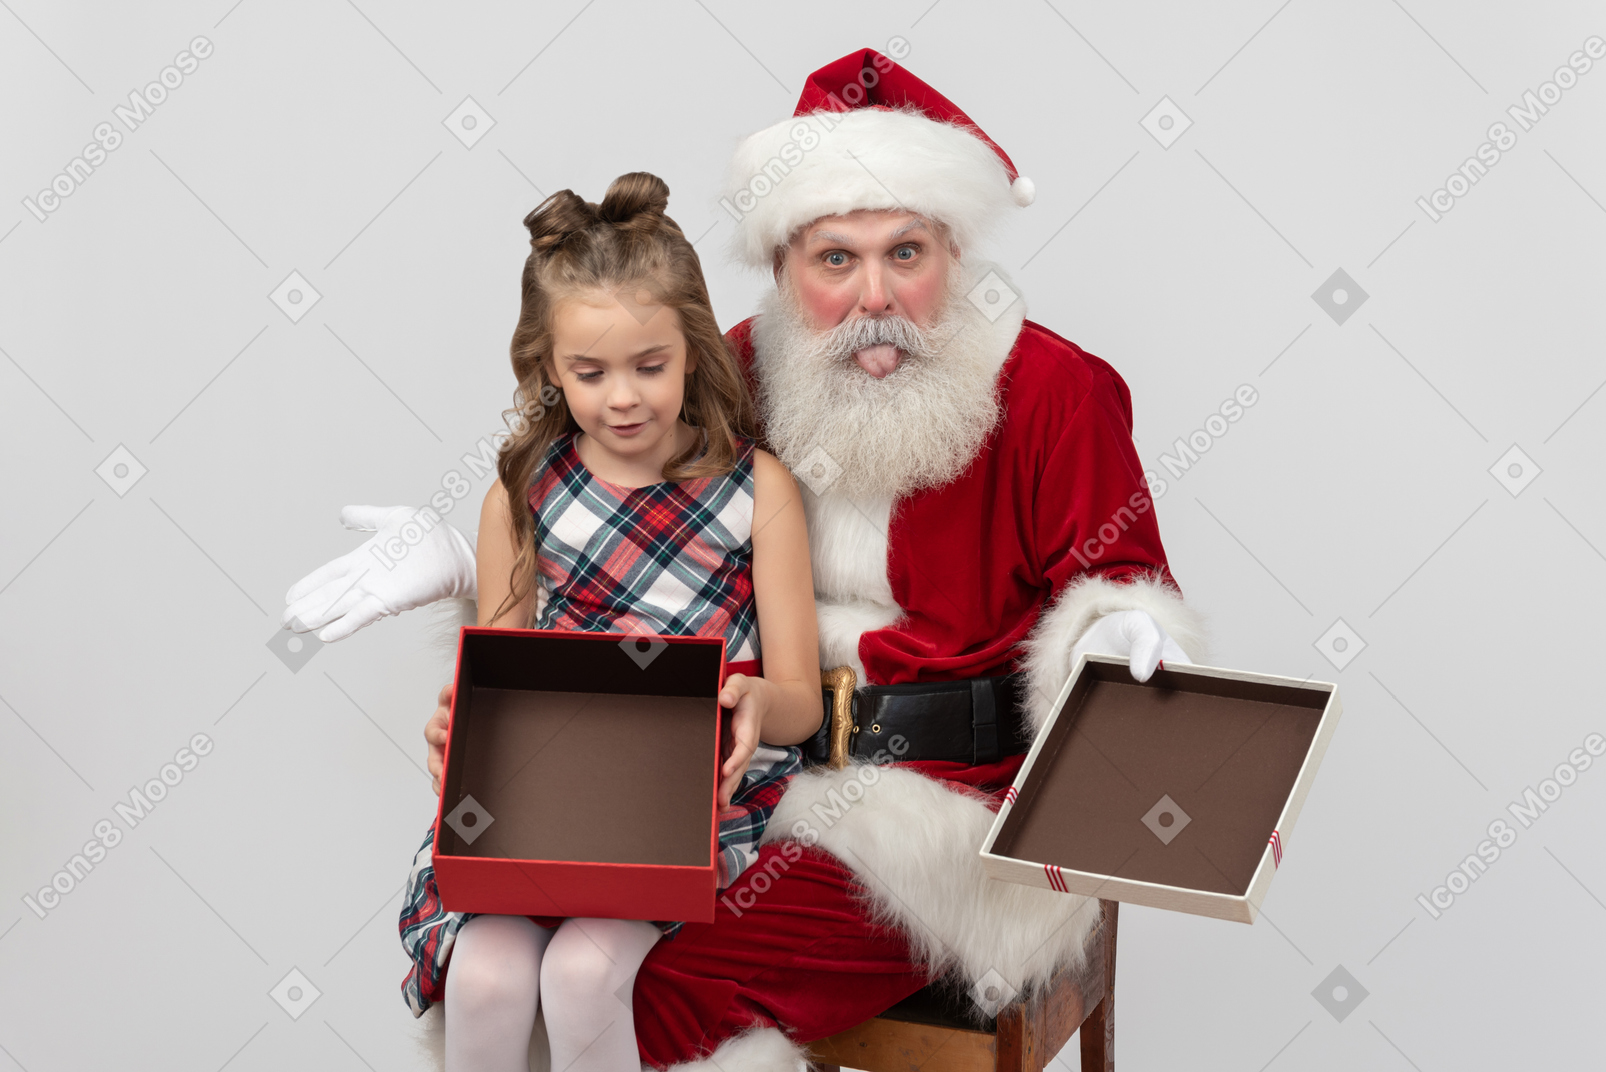 Sad kid girl holding empty gift box and santa showing a tongue